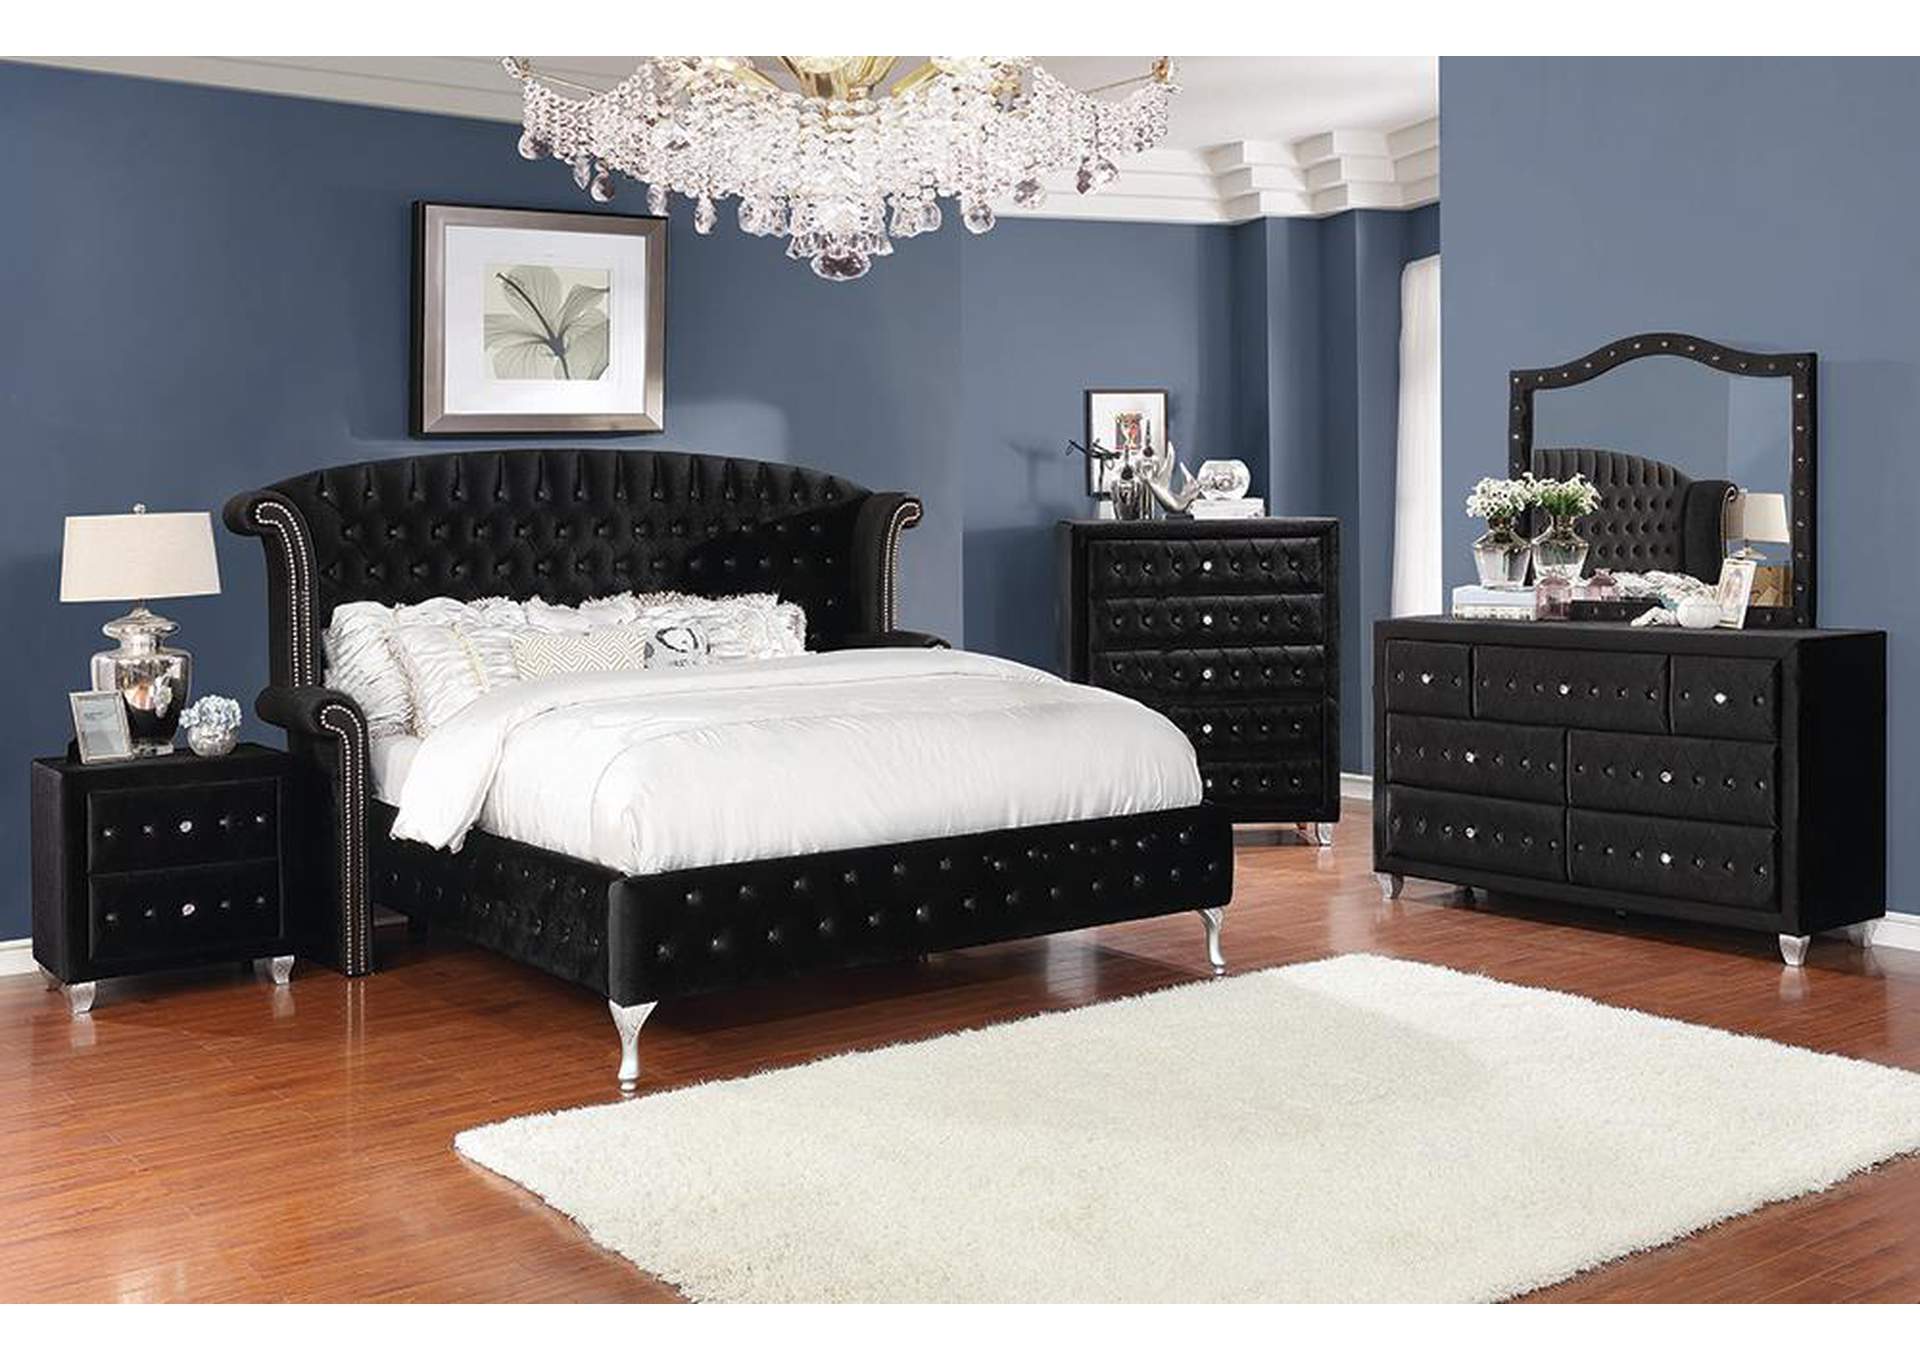 Deanna Metallic & Black Queen Bed w/Dresser & Mirror,Coaster Furniture